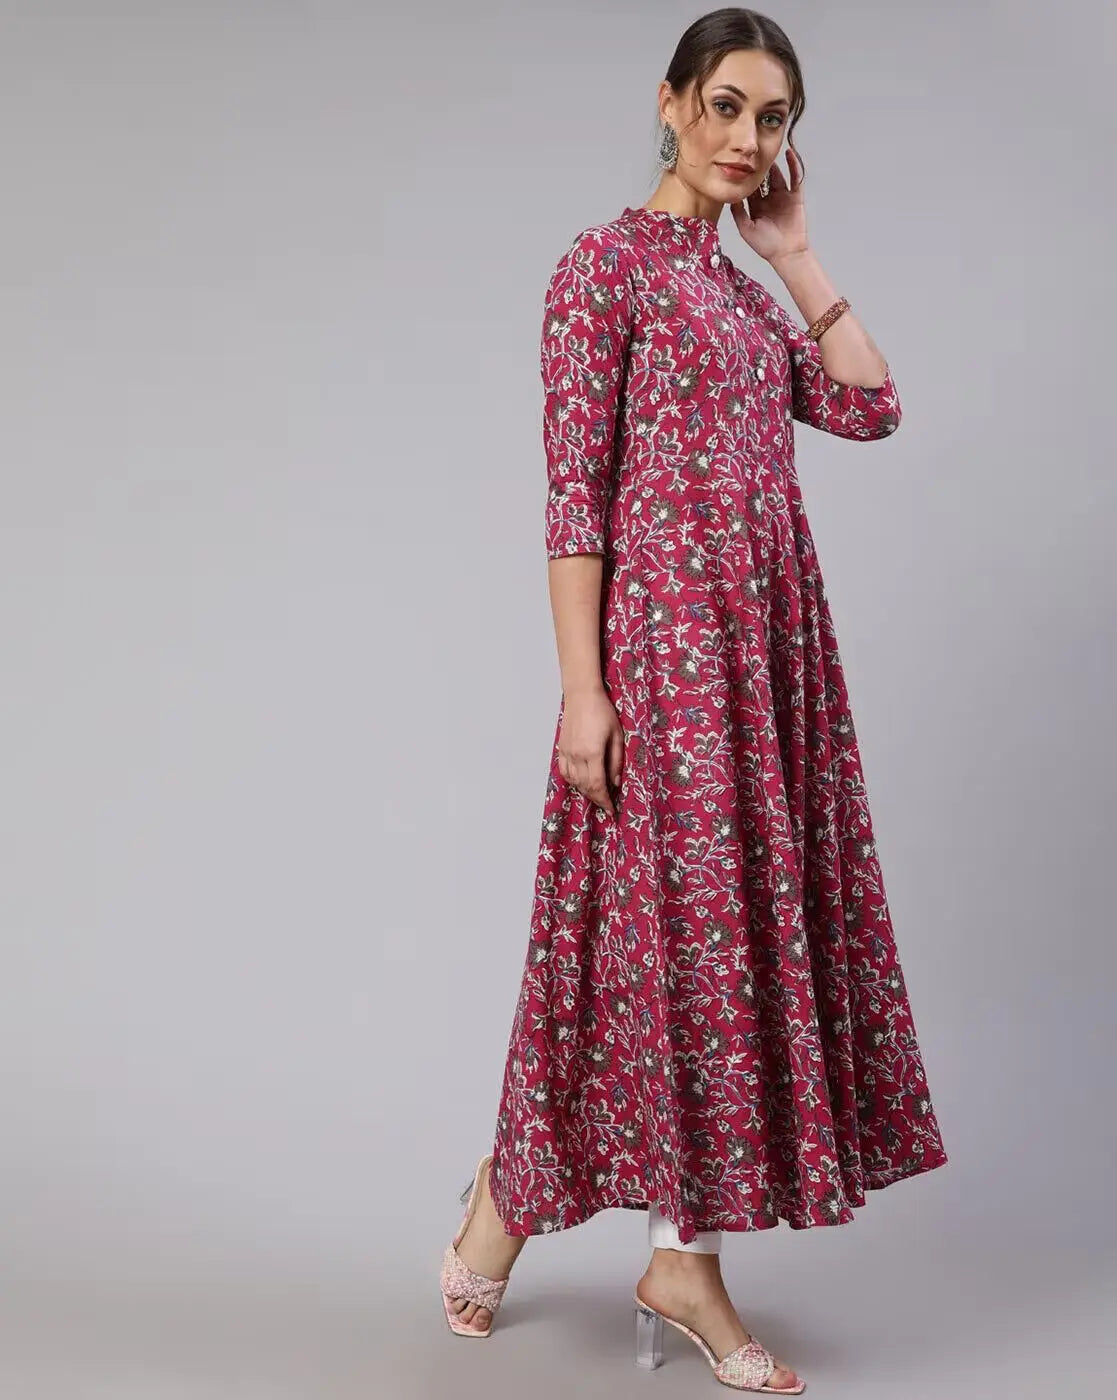 Indian Women Pink Floral A-Line Printed Kurta Kurti Dress Top Tunic Pakistani